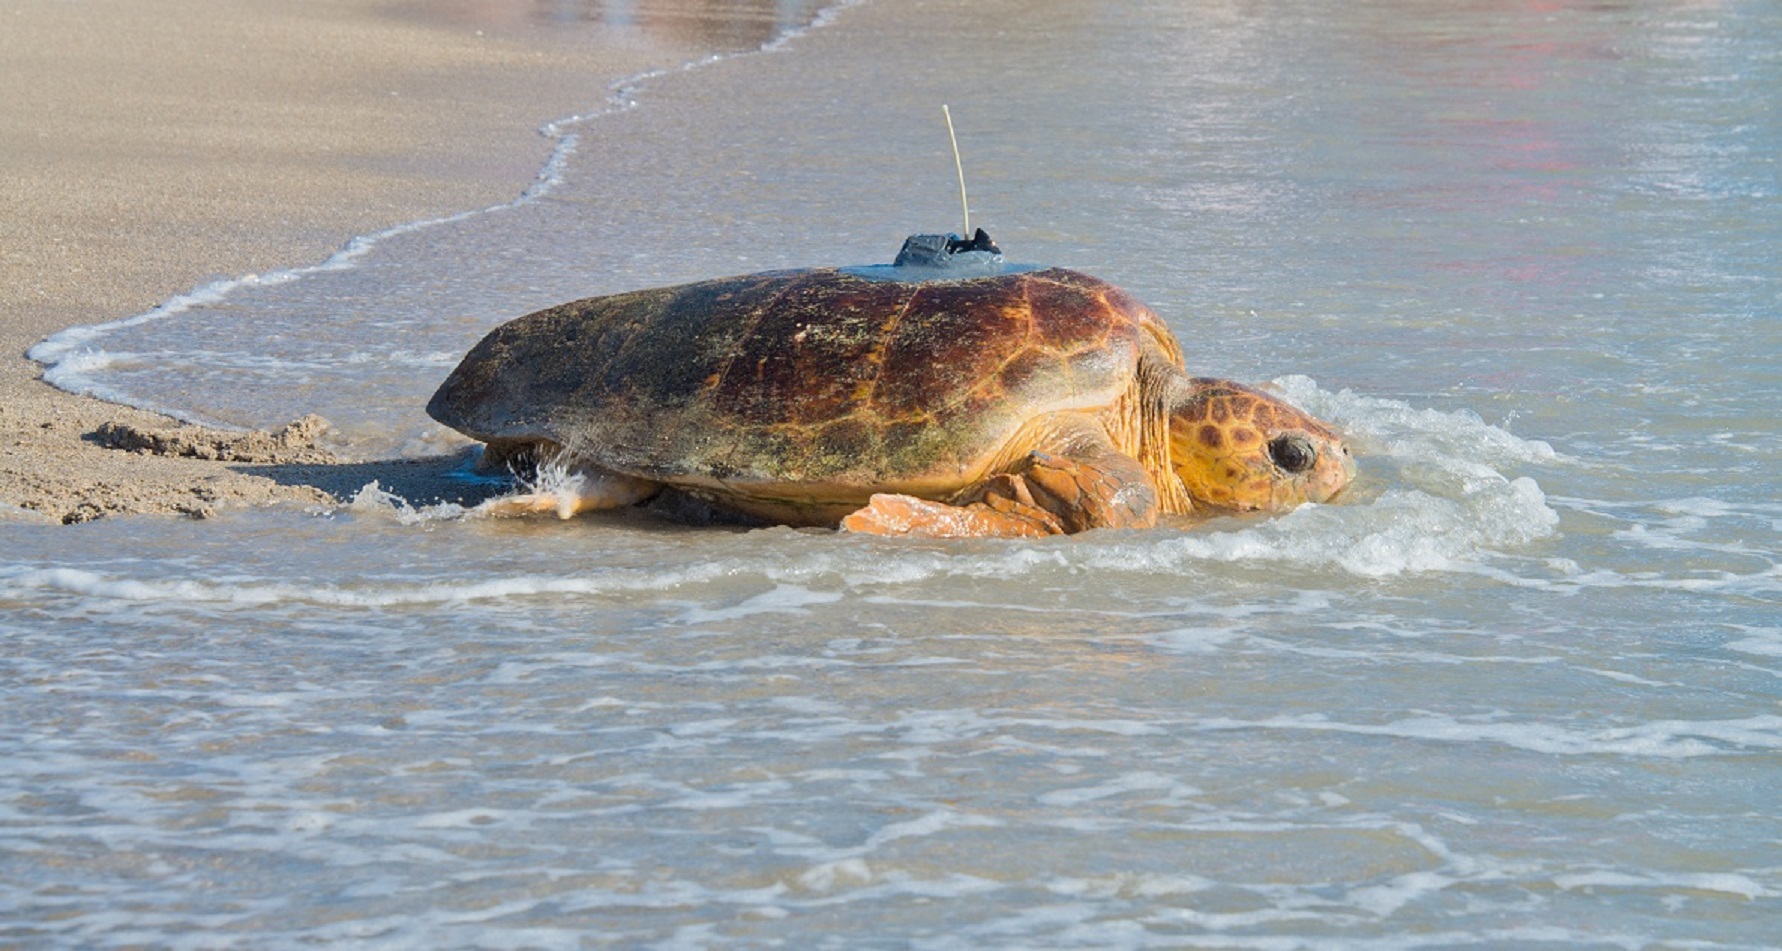 Tour de Turtles This Saturday at Disney’s Vero Beach Resort!